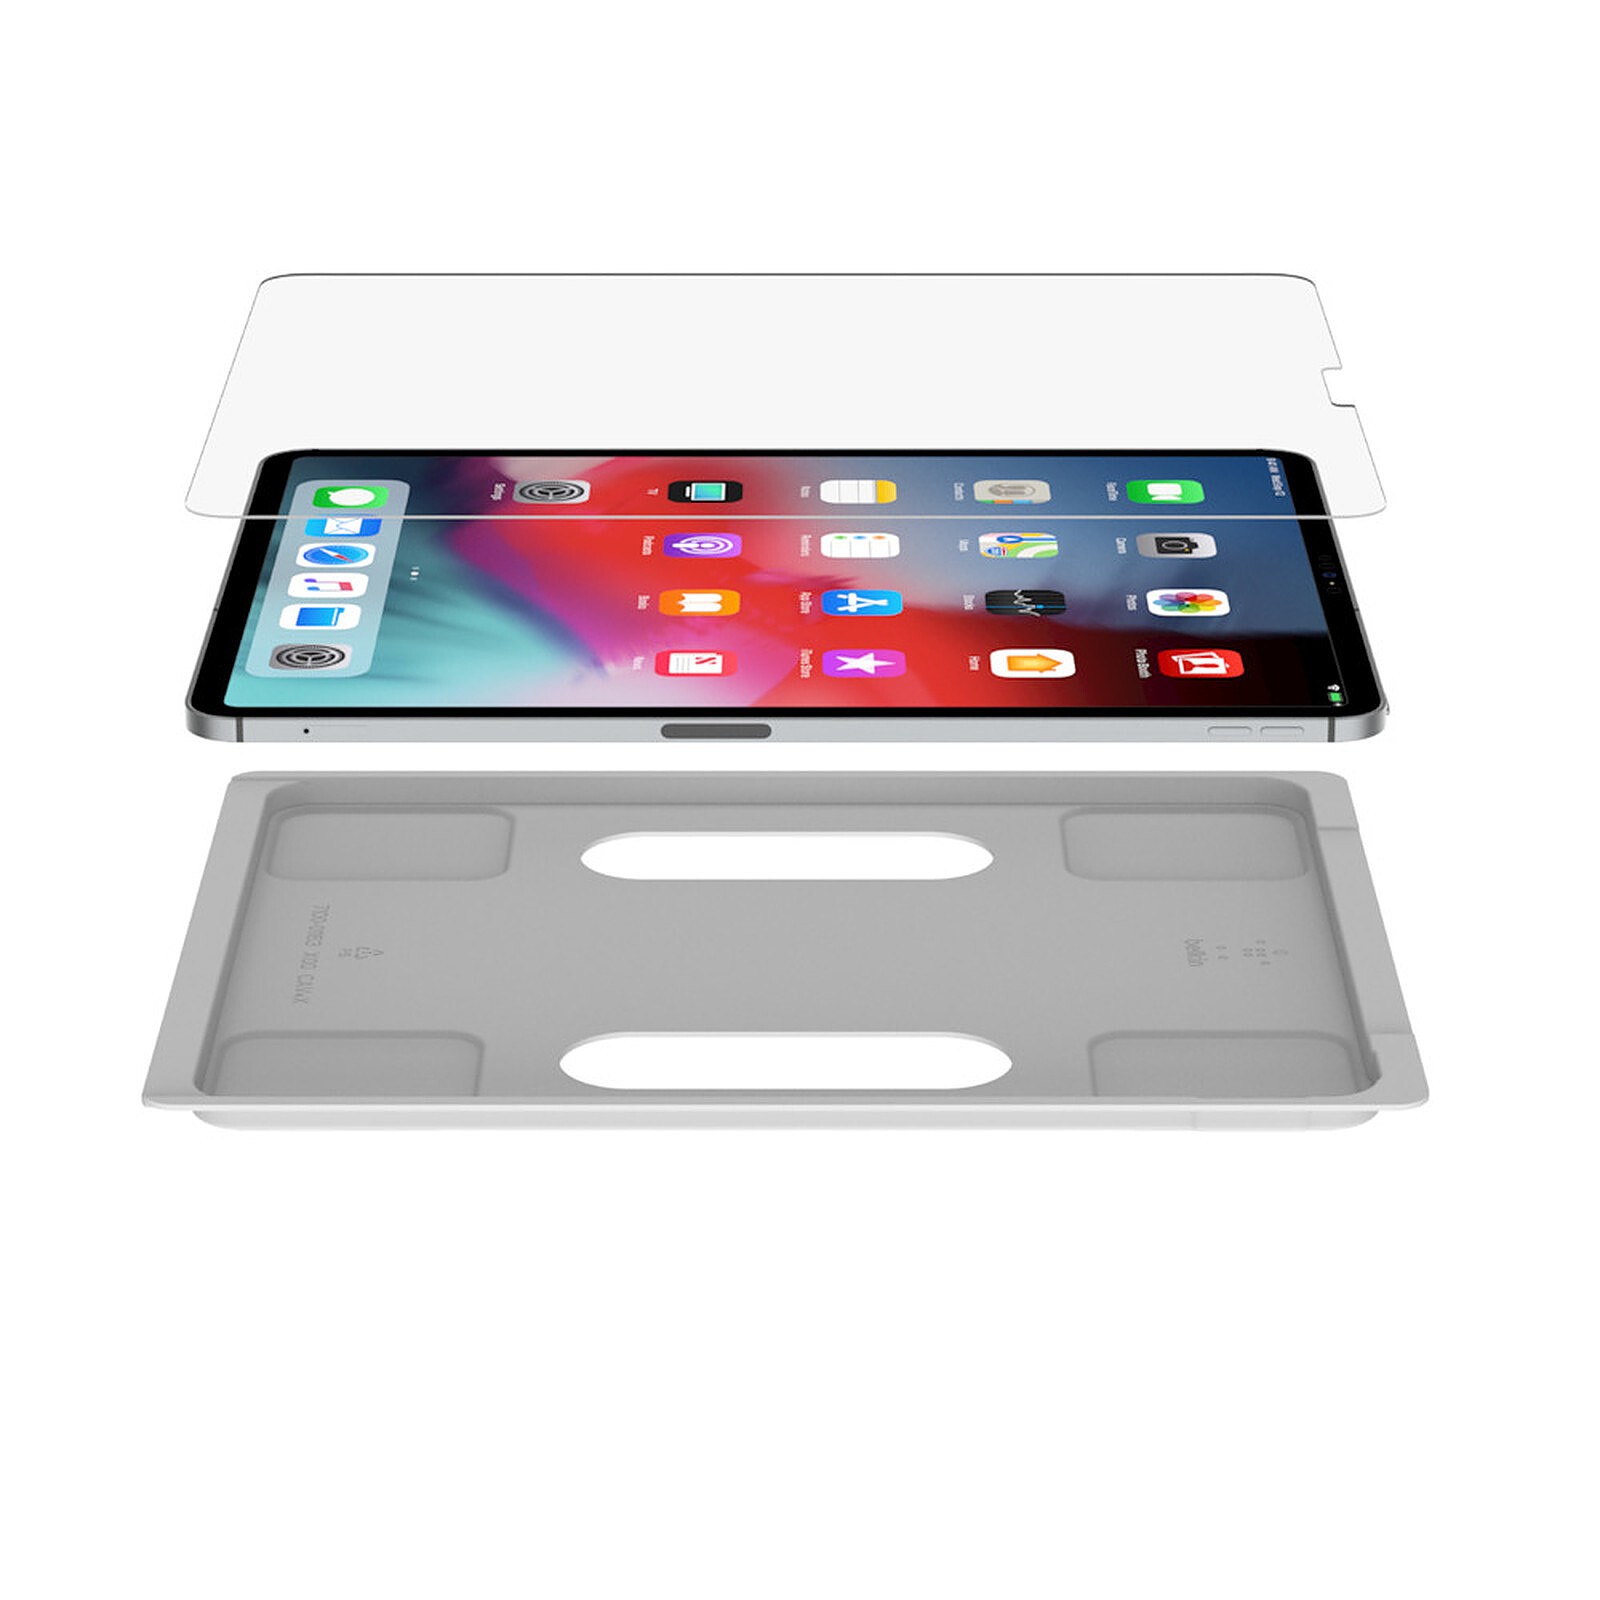 Protection d'écran Pour iPad 9th Gen Belkin SCREENFORCE